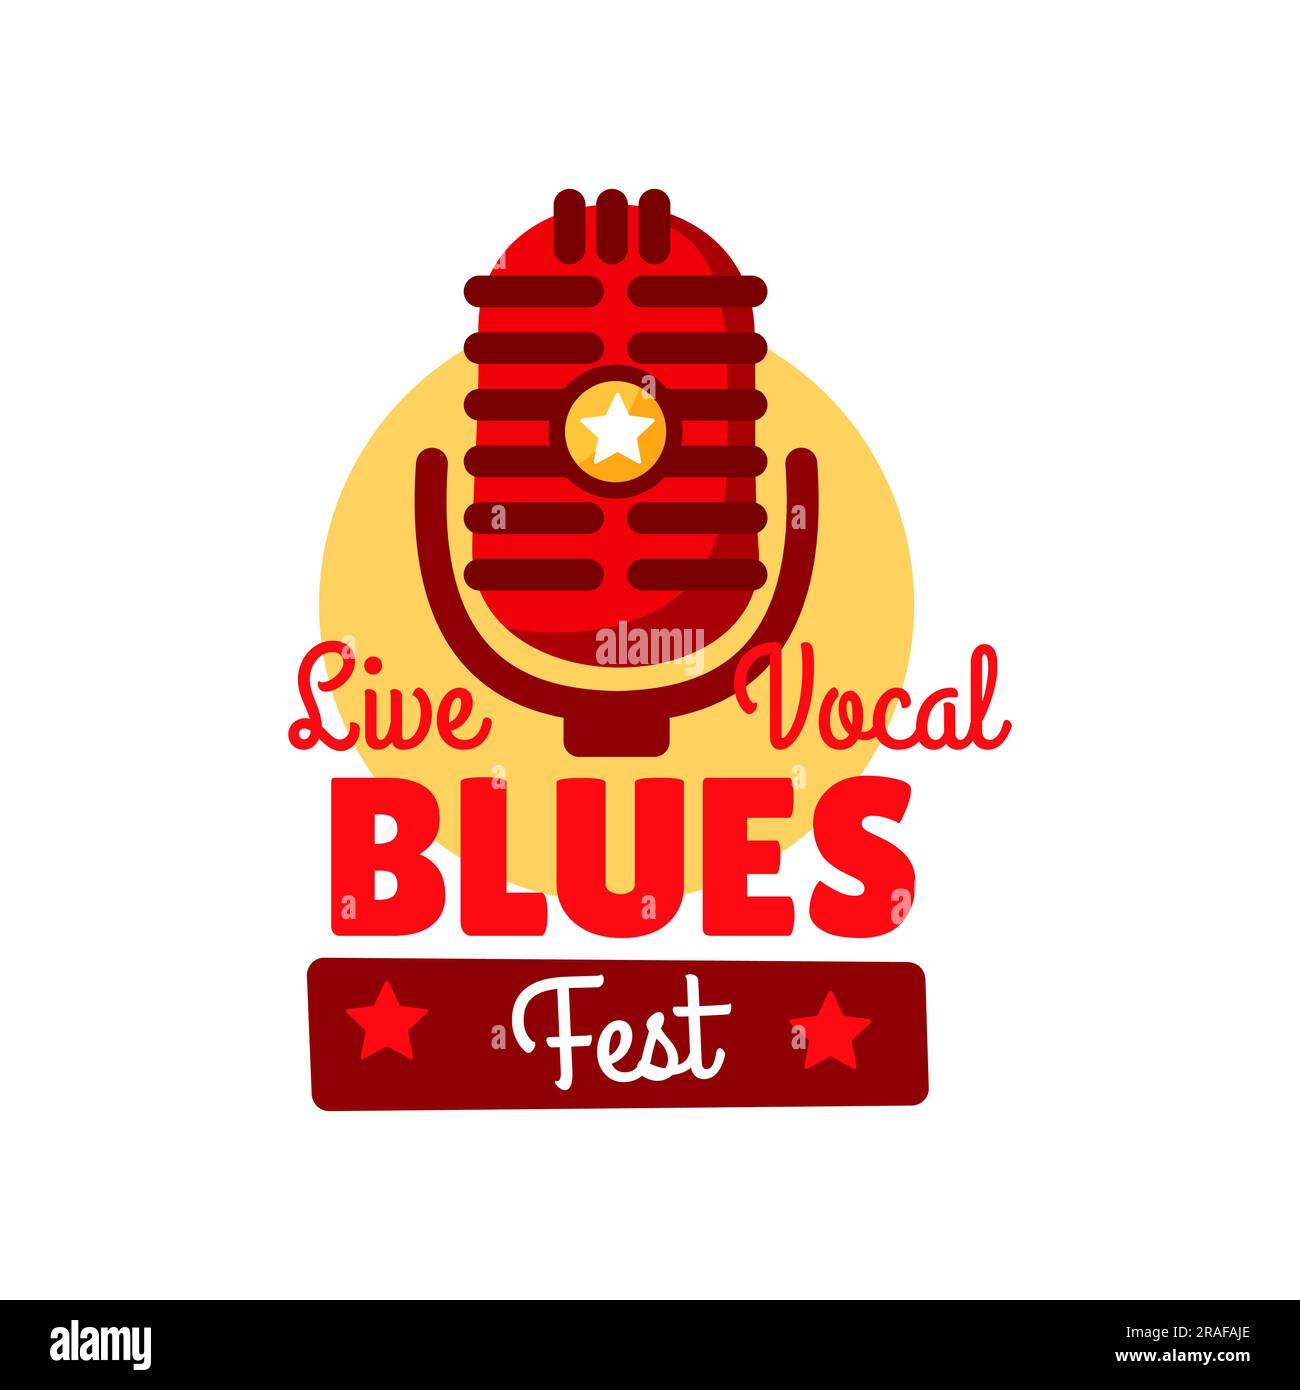 Icône du festival de musique Blues pour des concerts en direct et des concerts, affiche vectorielle. Le Blues Music fest est l'icône du microphone rétro vintage, du groupe acoustique et du club de blues ou de l'emblème de l'événement de bar de musique avec des étoiles Illustration de Vecteur